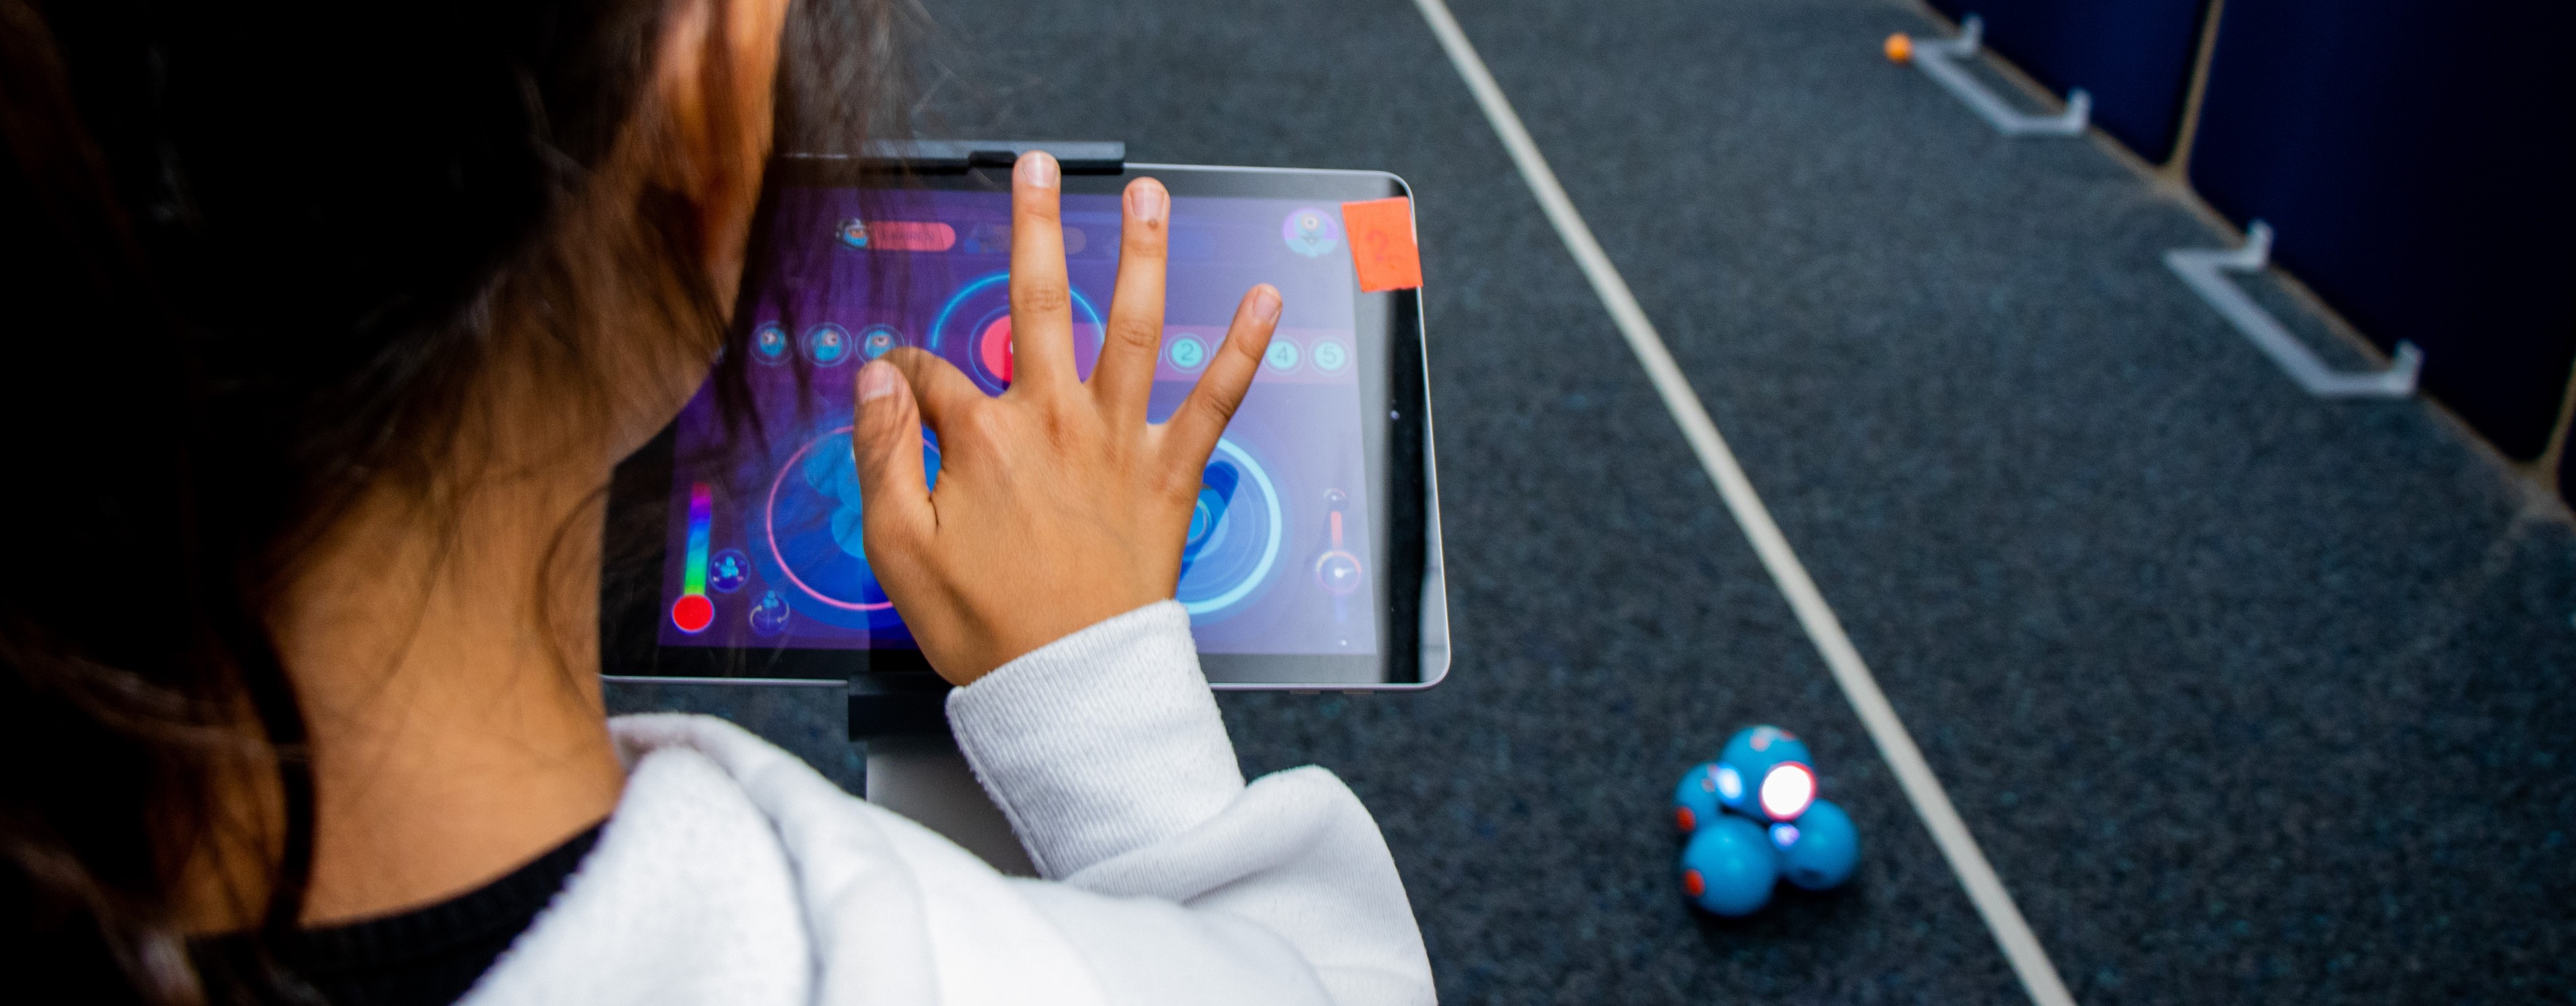 Bild zeigt Schülerin, die per Tablet einen Roboter steuert